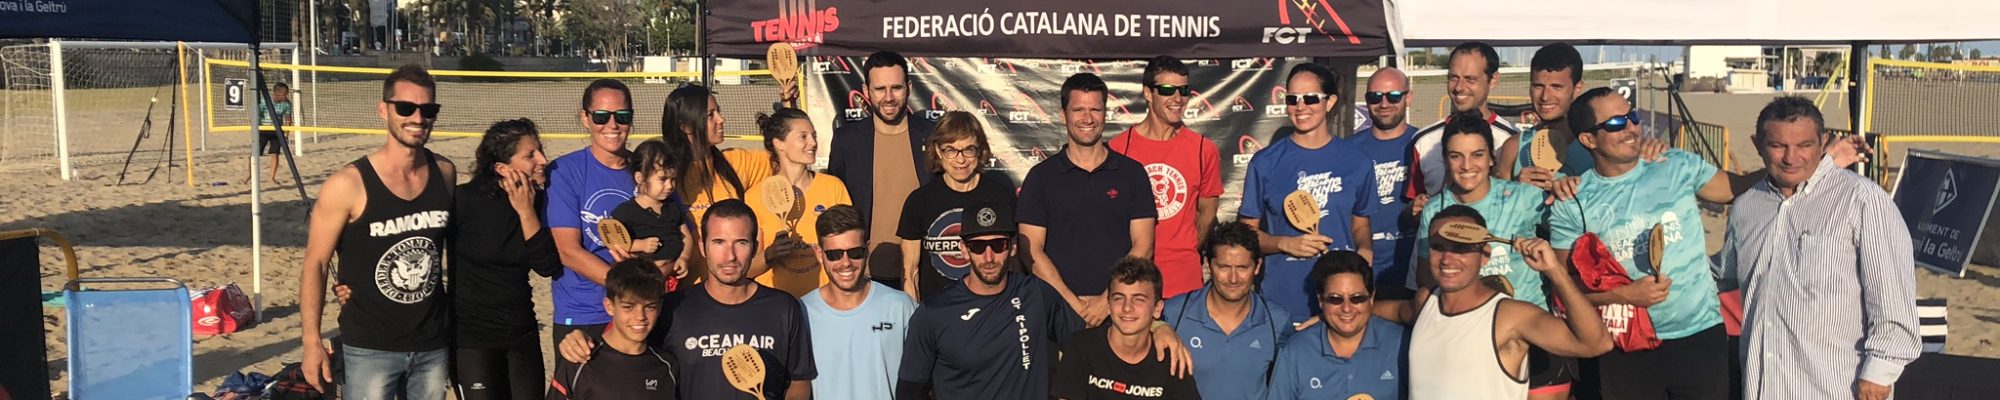 Campionat Catalunya Tennis Platja (11)